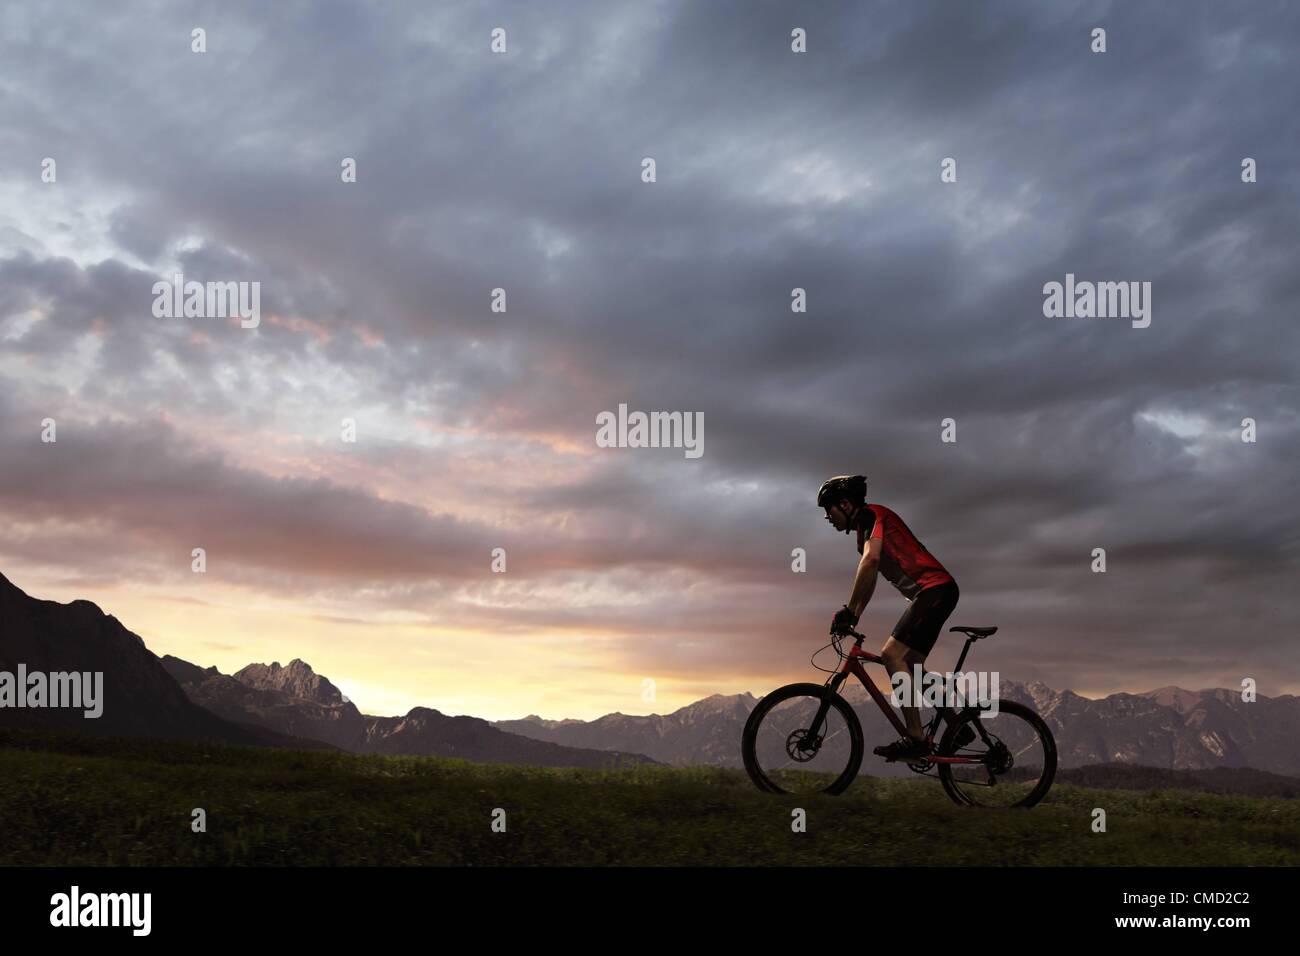 08.11.2011. L'Allemagne. Parution du modèle photo d'un cycliste en équitation le soleil couchant. Banque D'Images